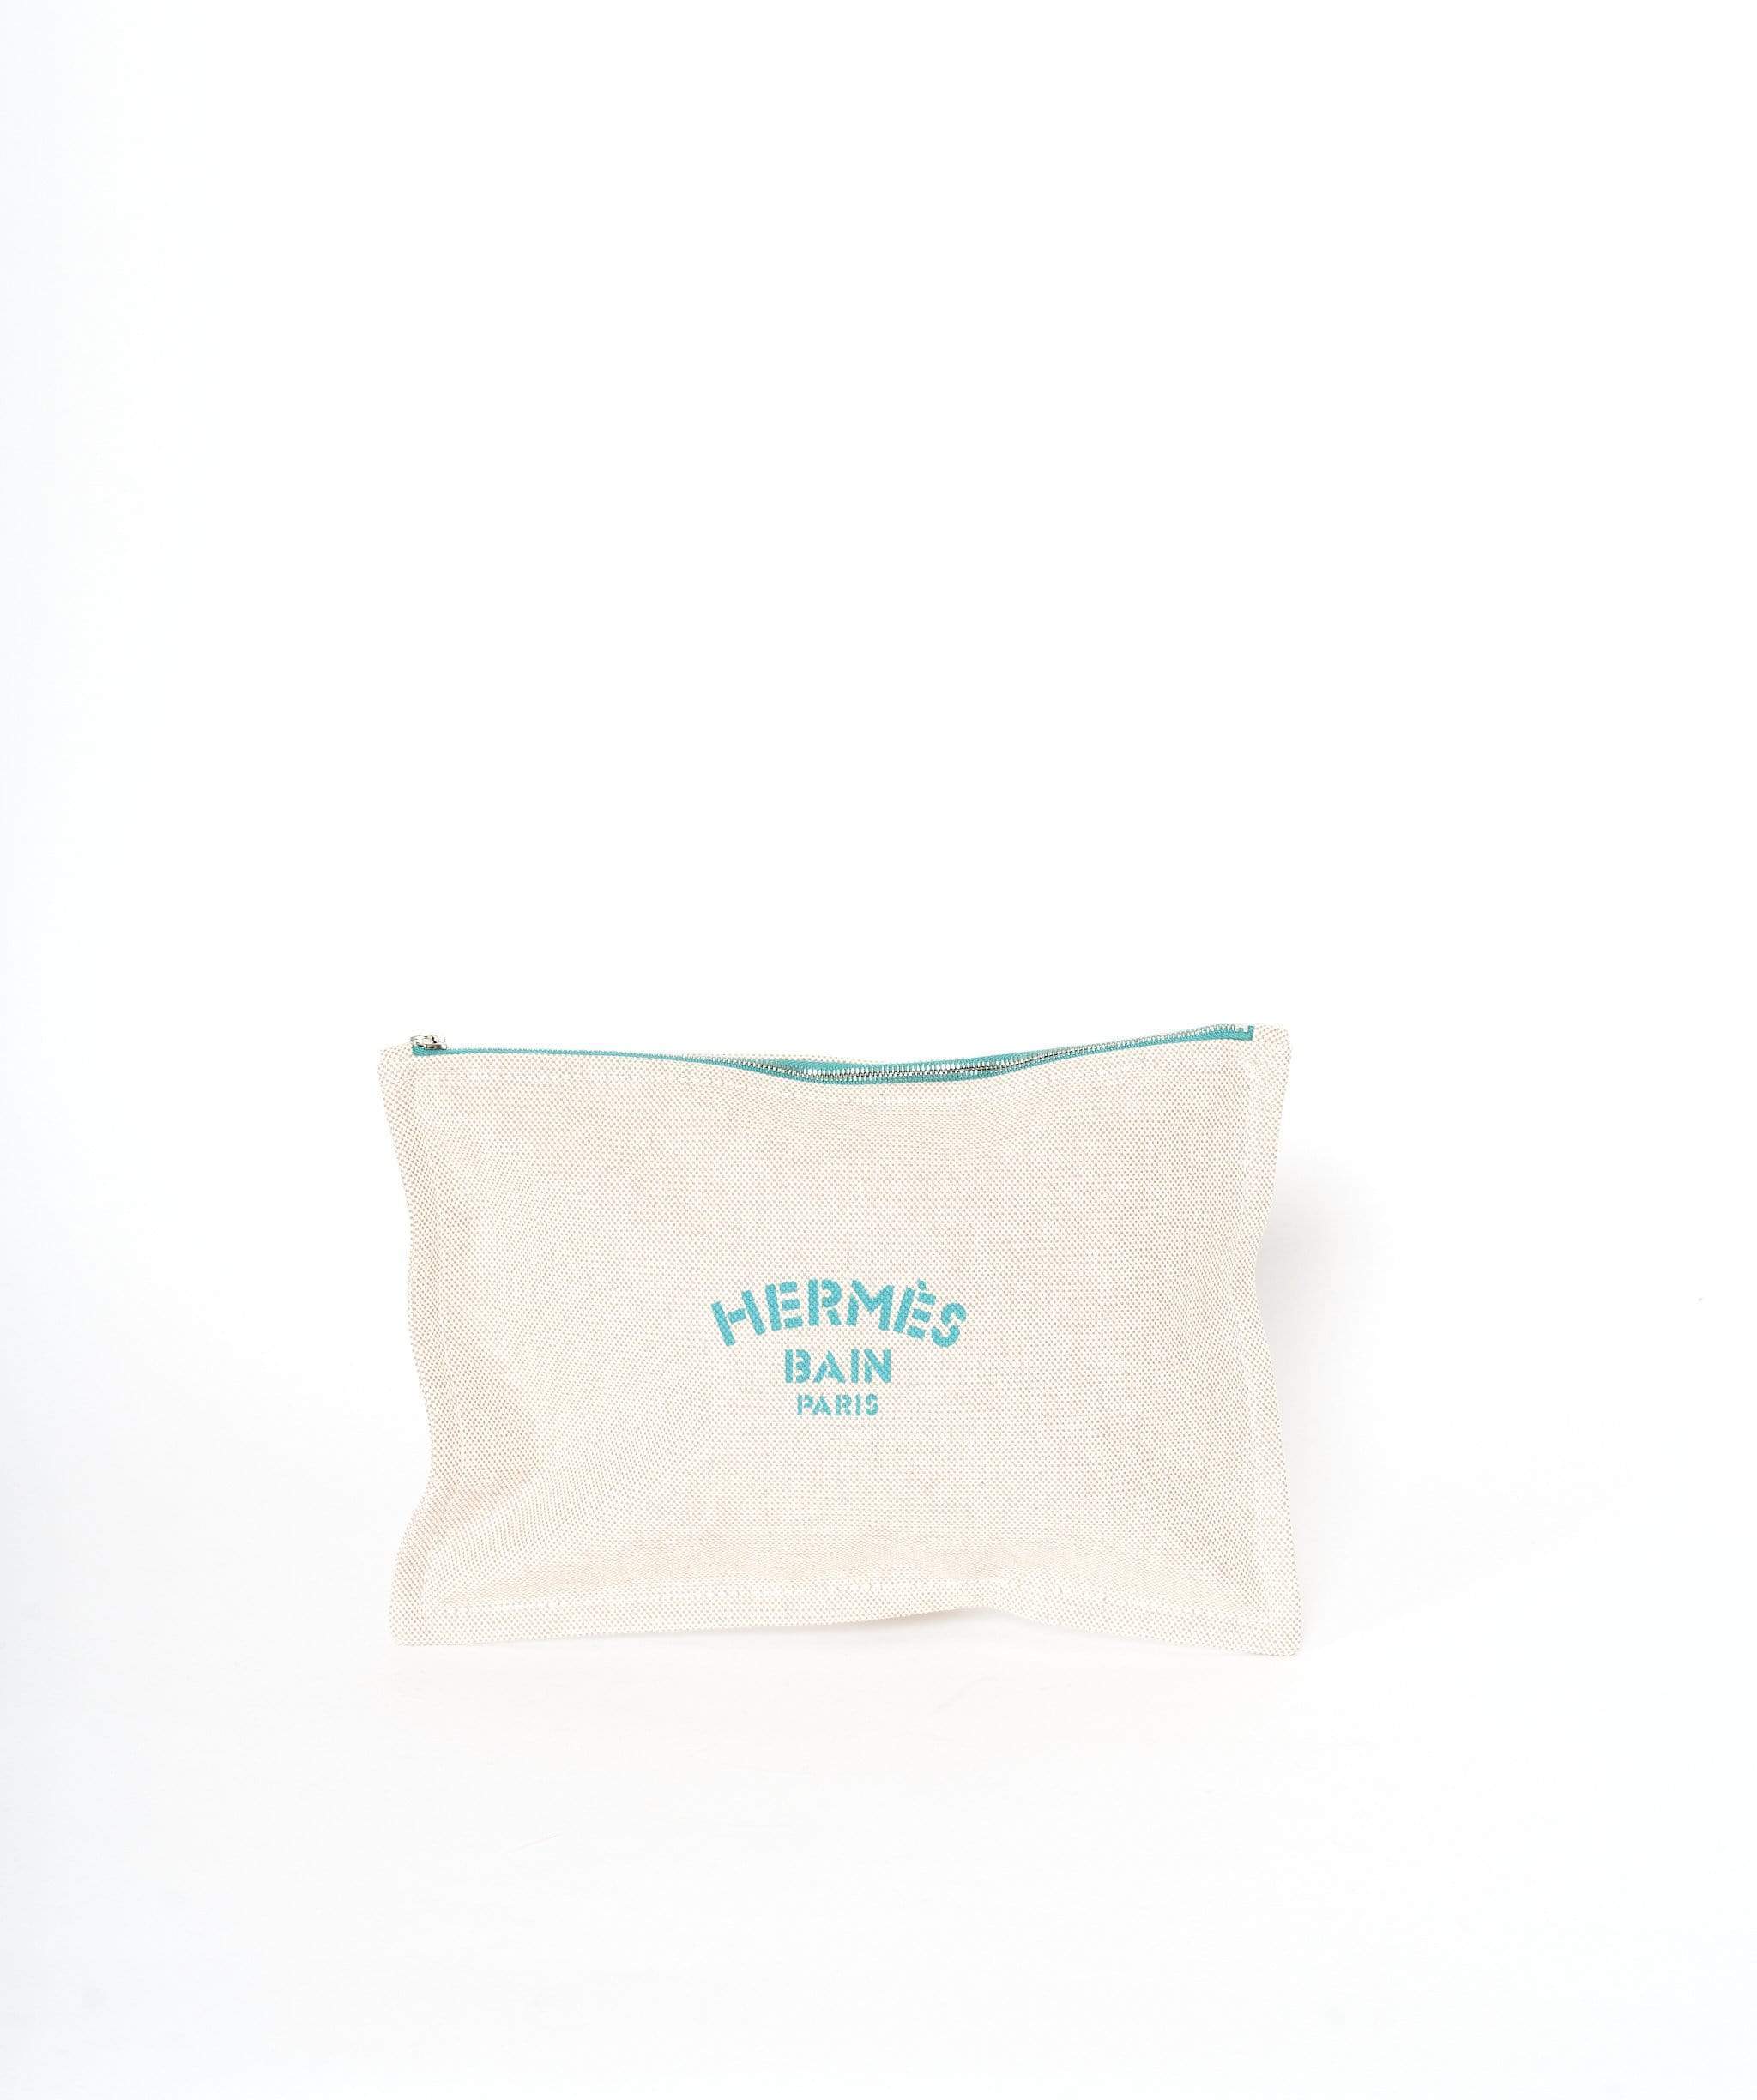 Hermès Hermes Bain Paris wash bag